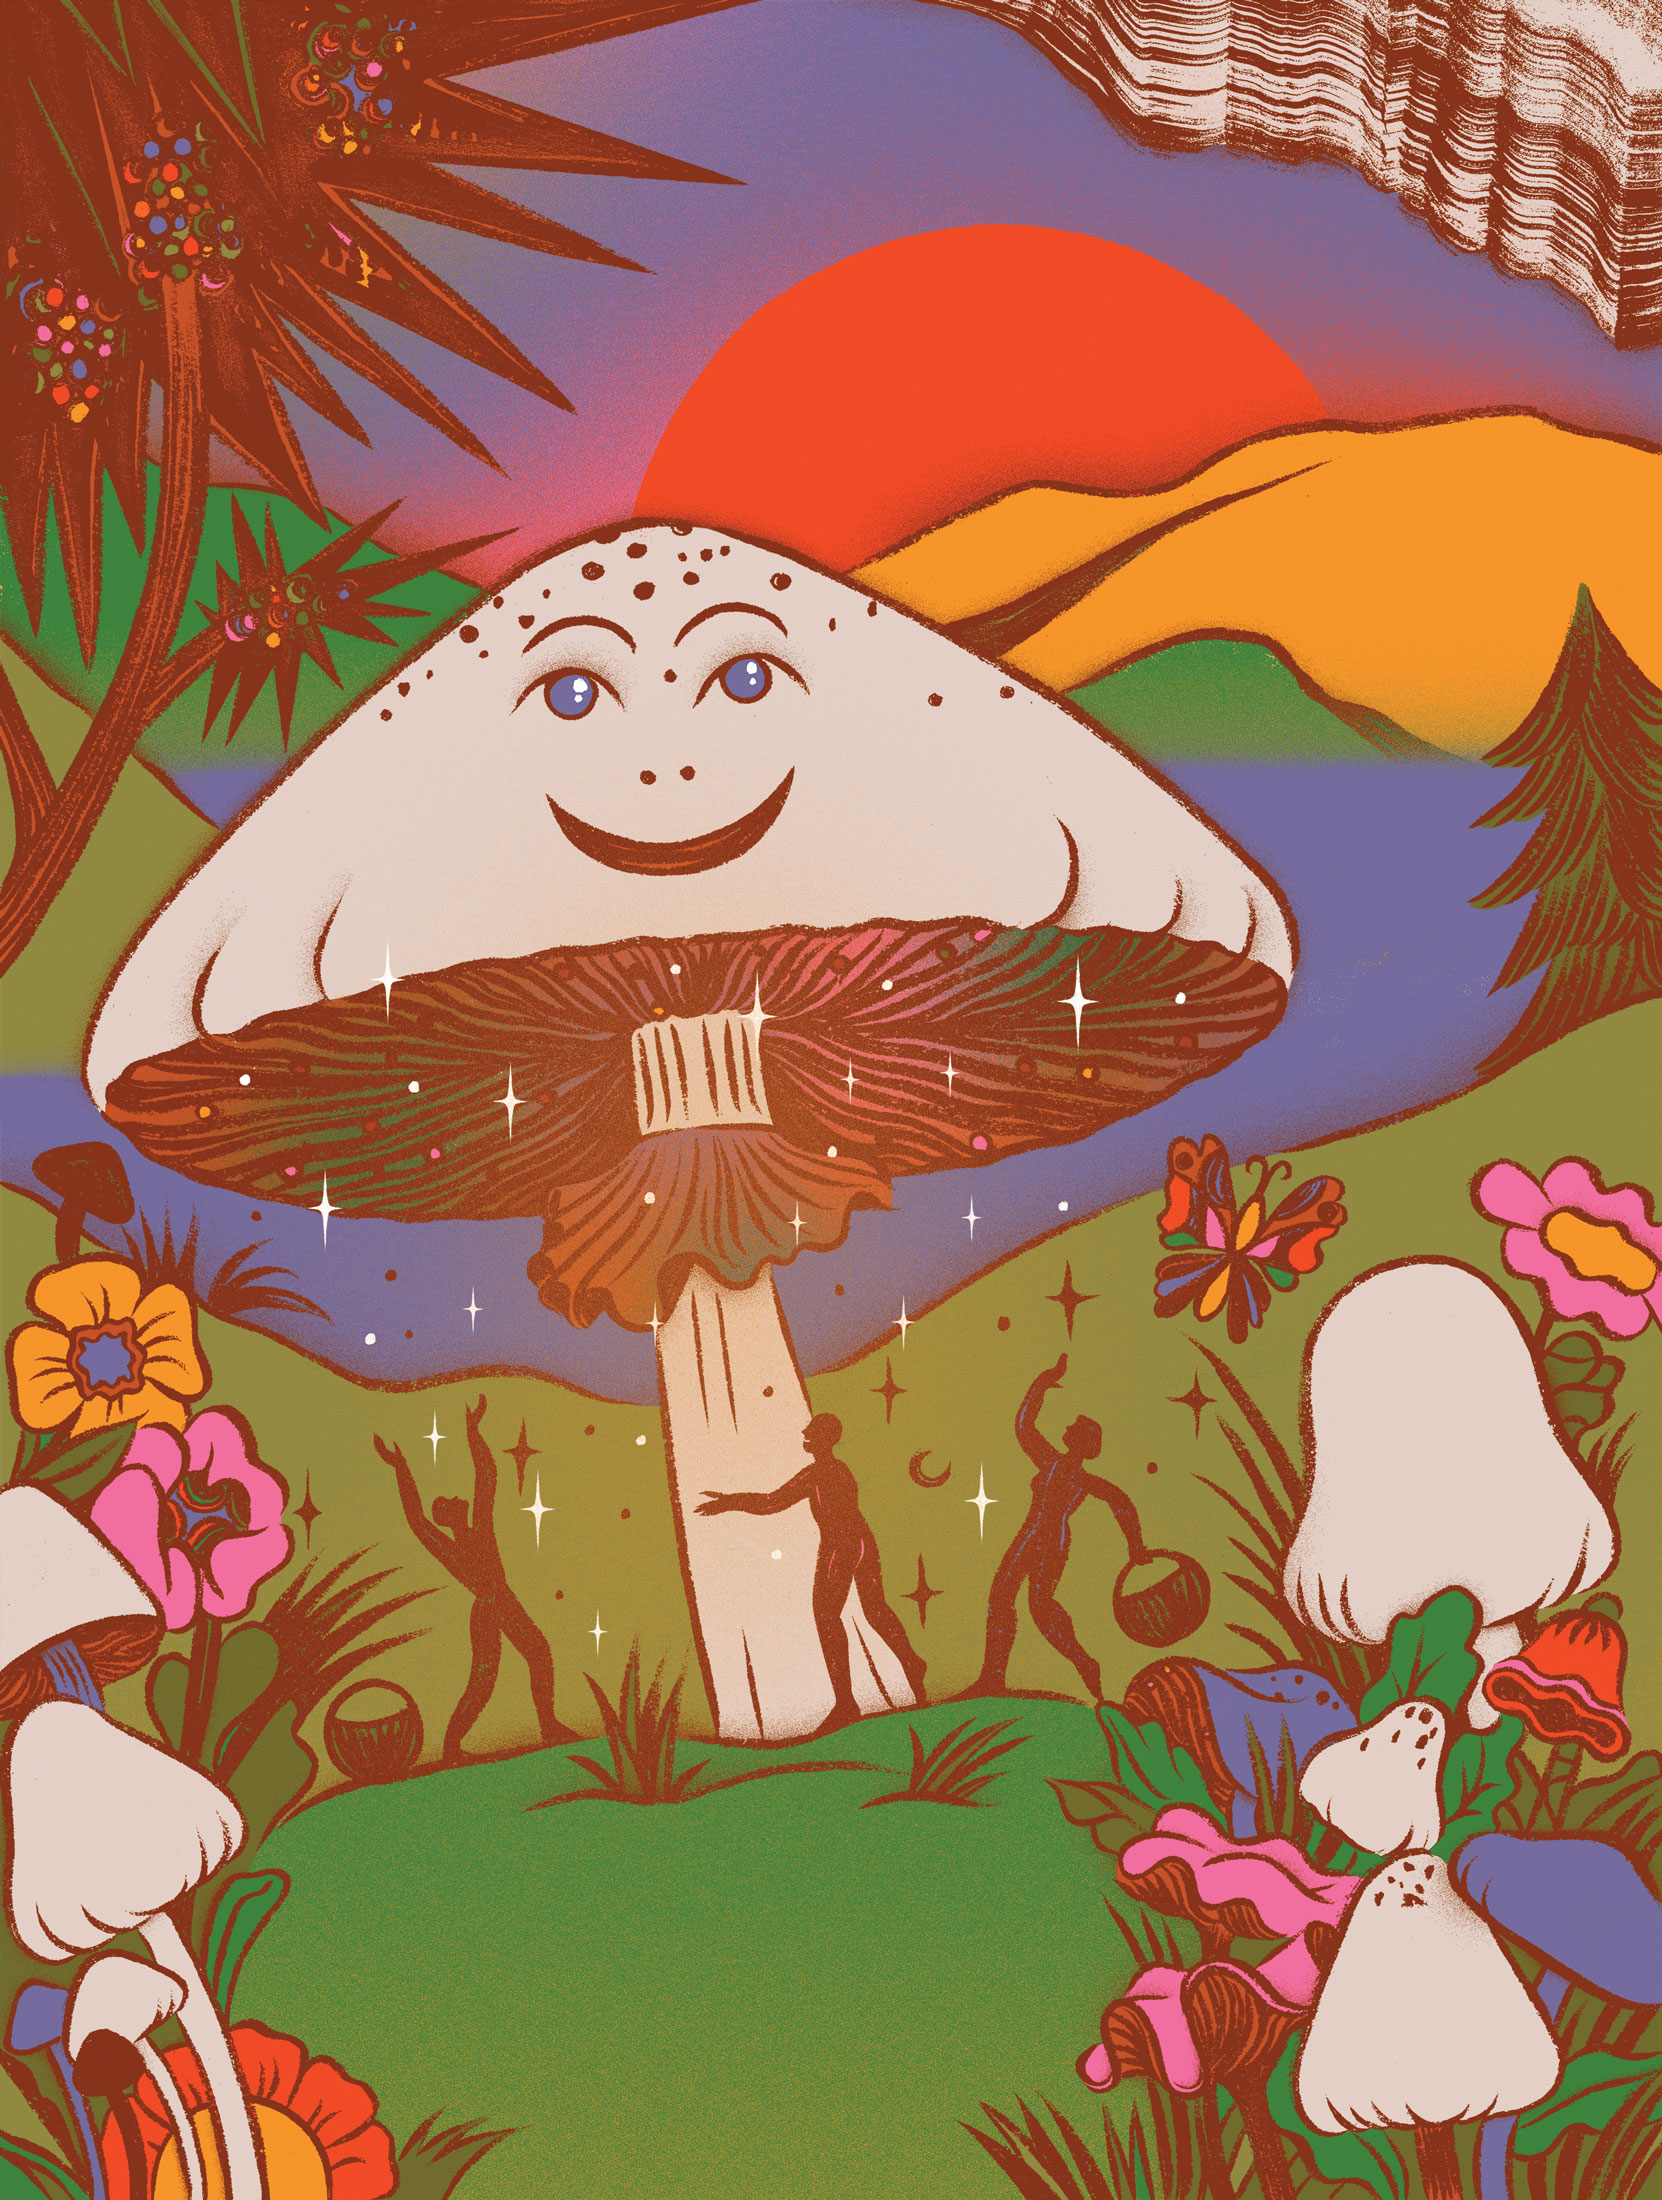 magic mushroom cartoons